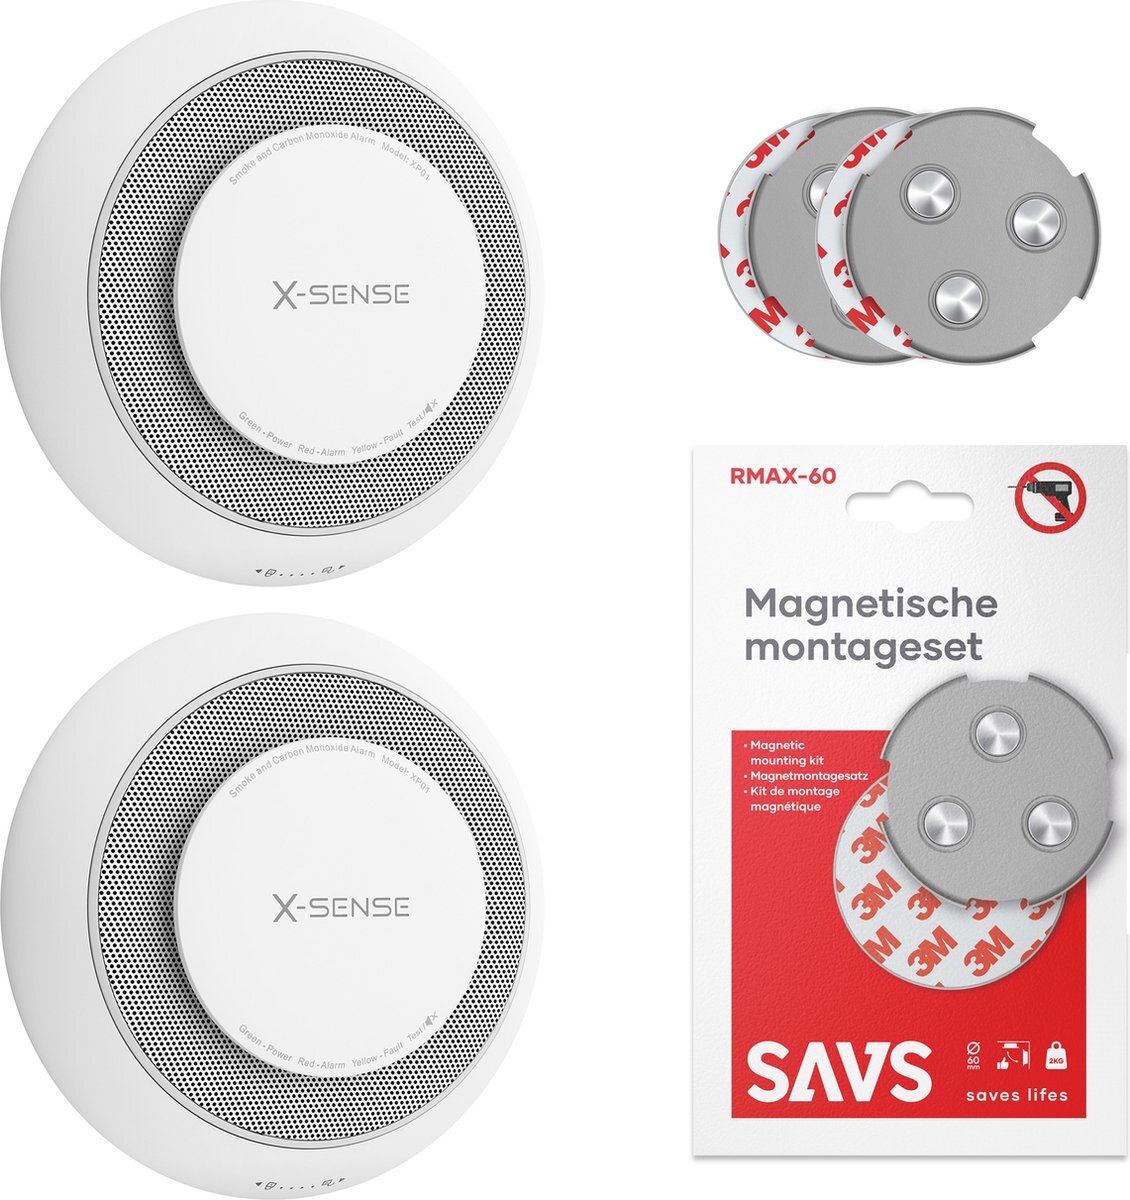 X-sense XP01 Combimelder - Met magneet montage - 2 Combimelders - Rook en koolmonoxide - 10 Jaar batterij - Rookmelder en koolmonoxidemelder - Rook én CO melder zonder boren